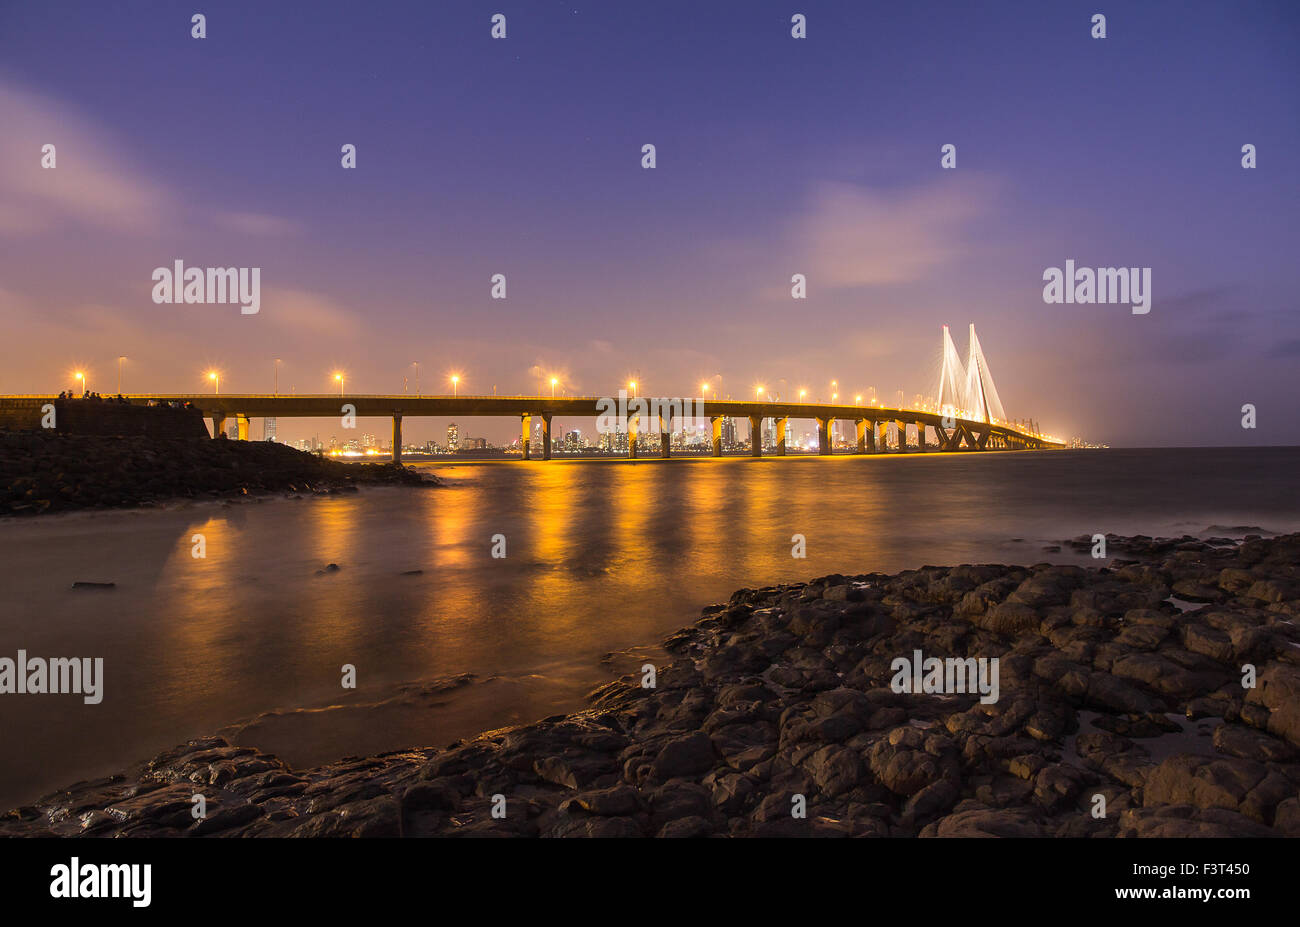 Le Bandra et Worli - Lien, pont qui relie la mer banlieue ouest de Mumbai avec Worli au sud de Mumbai. Banque D'Images